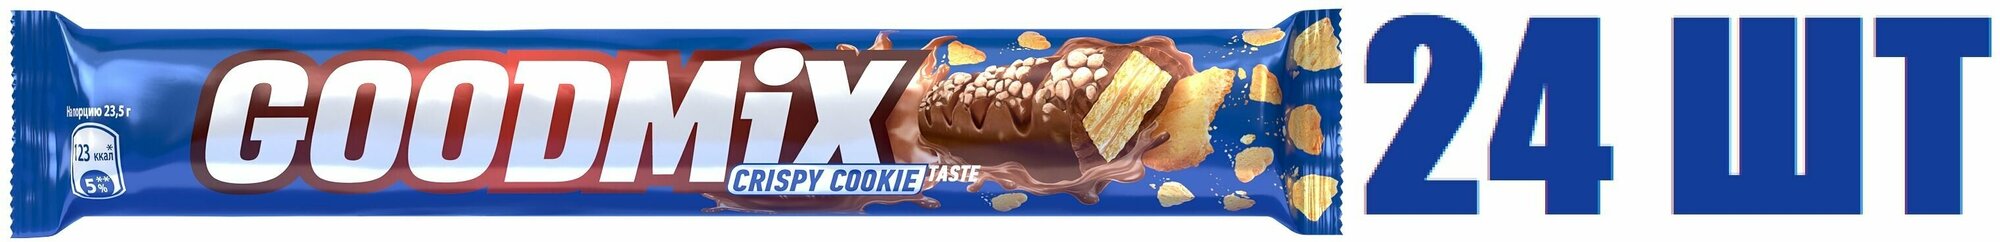 Шоколадный батончик, "Россия - Щедрая душа! GoodMix", со вкусом печенья, с хрустящей вафлей, 47г, 24 шт - фотография № 1